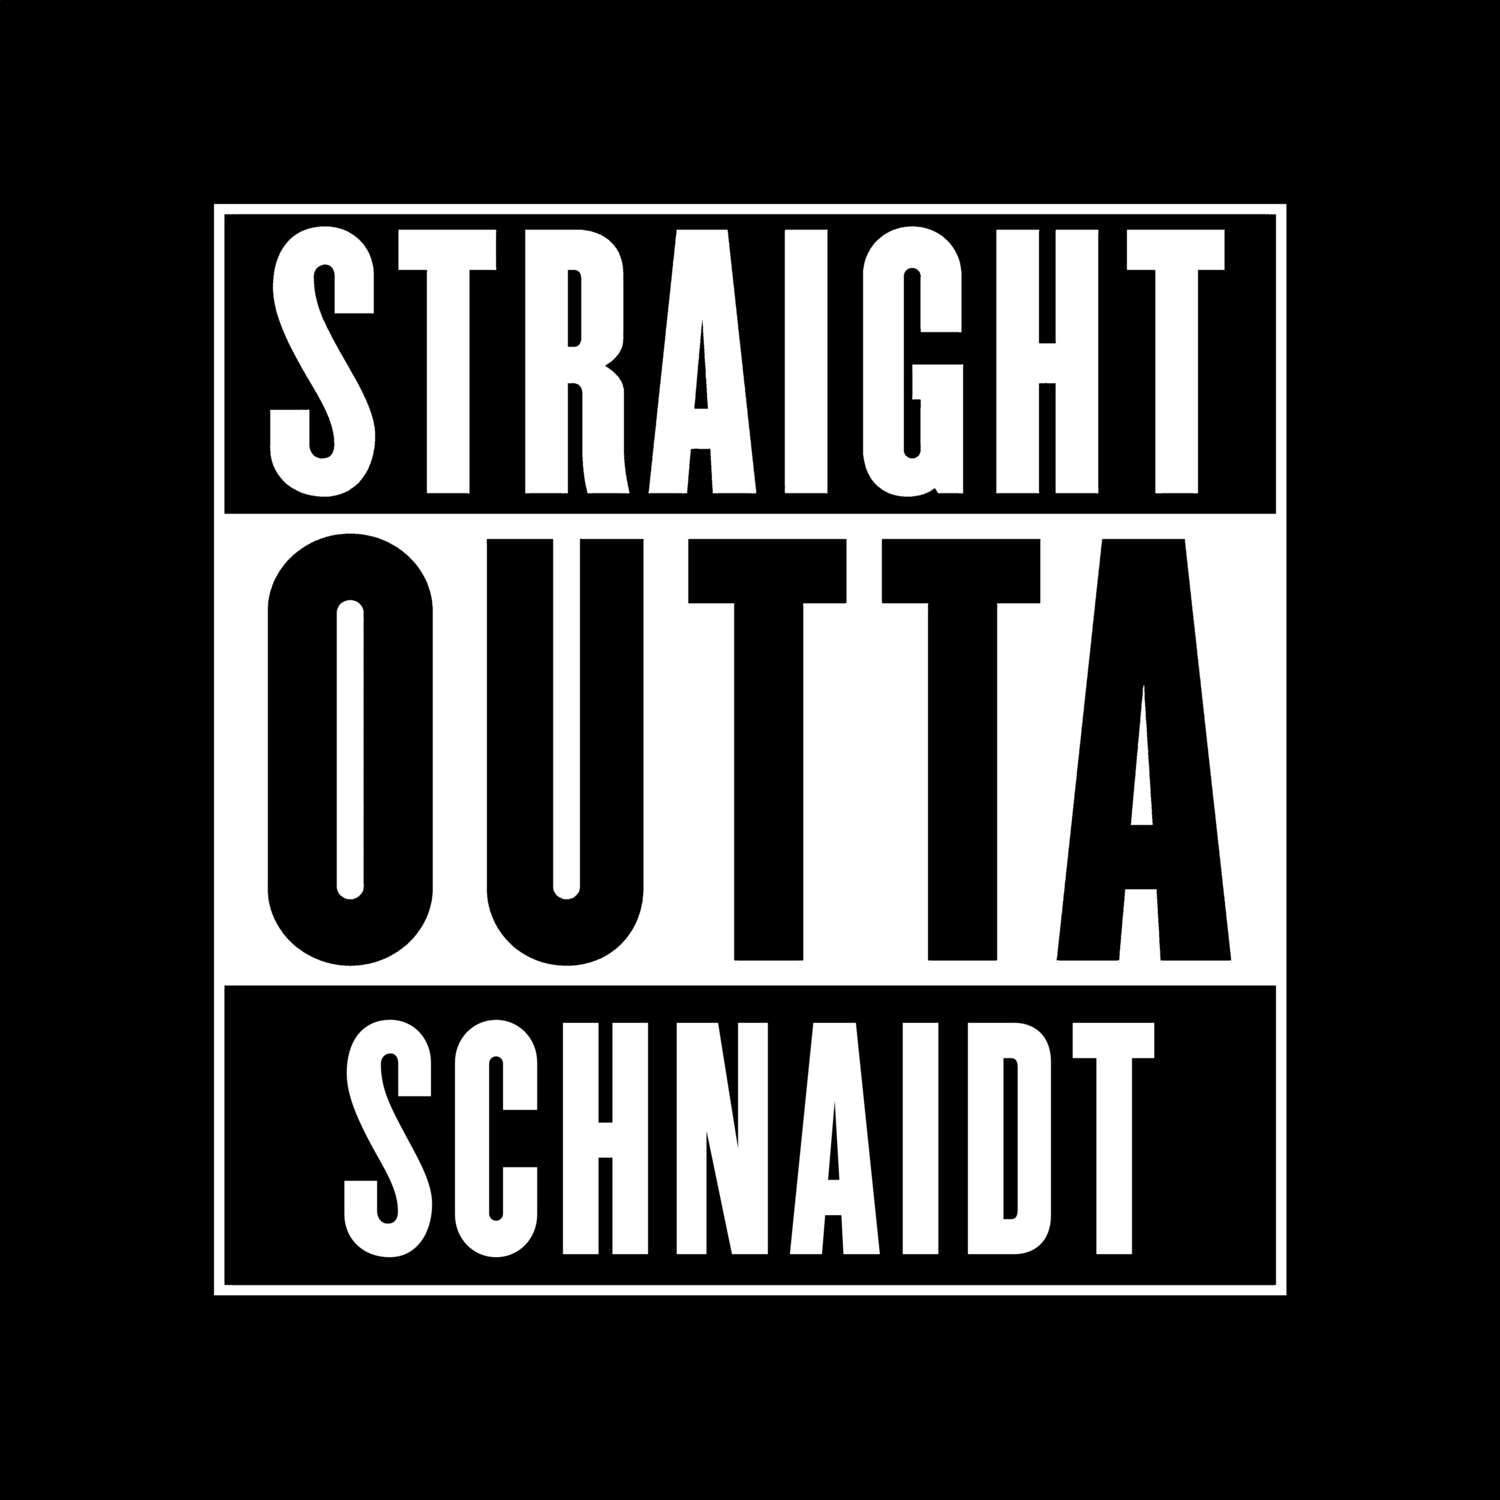 Schnaidt T-Shirt »Straight Outta«